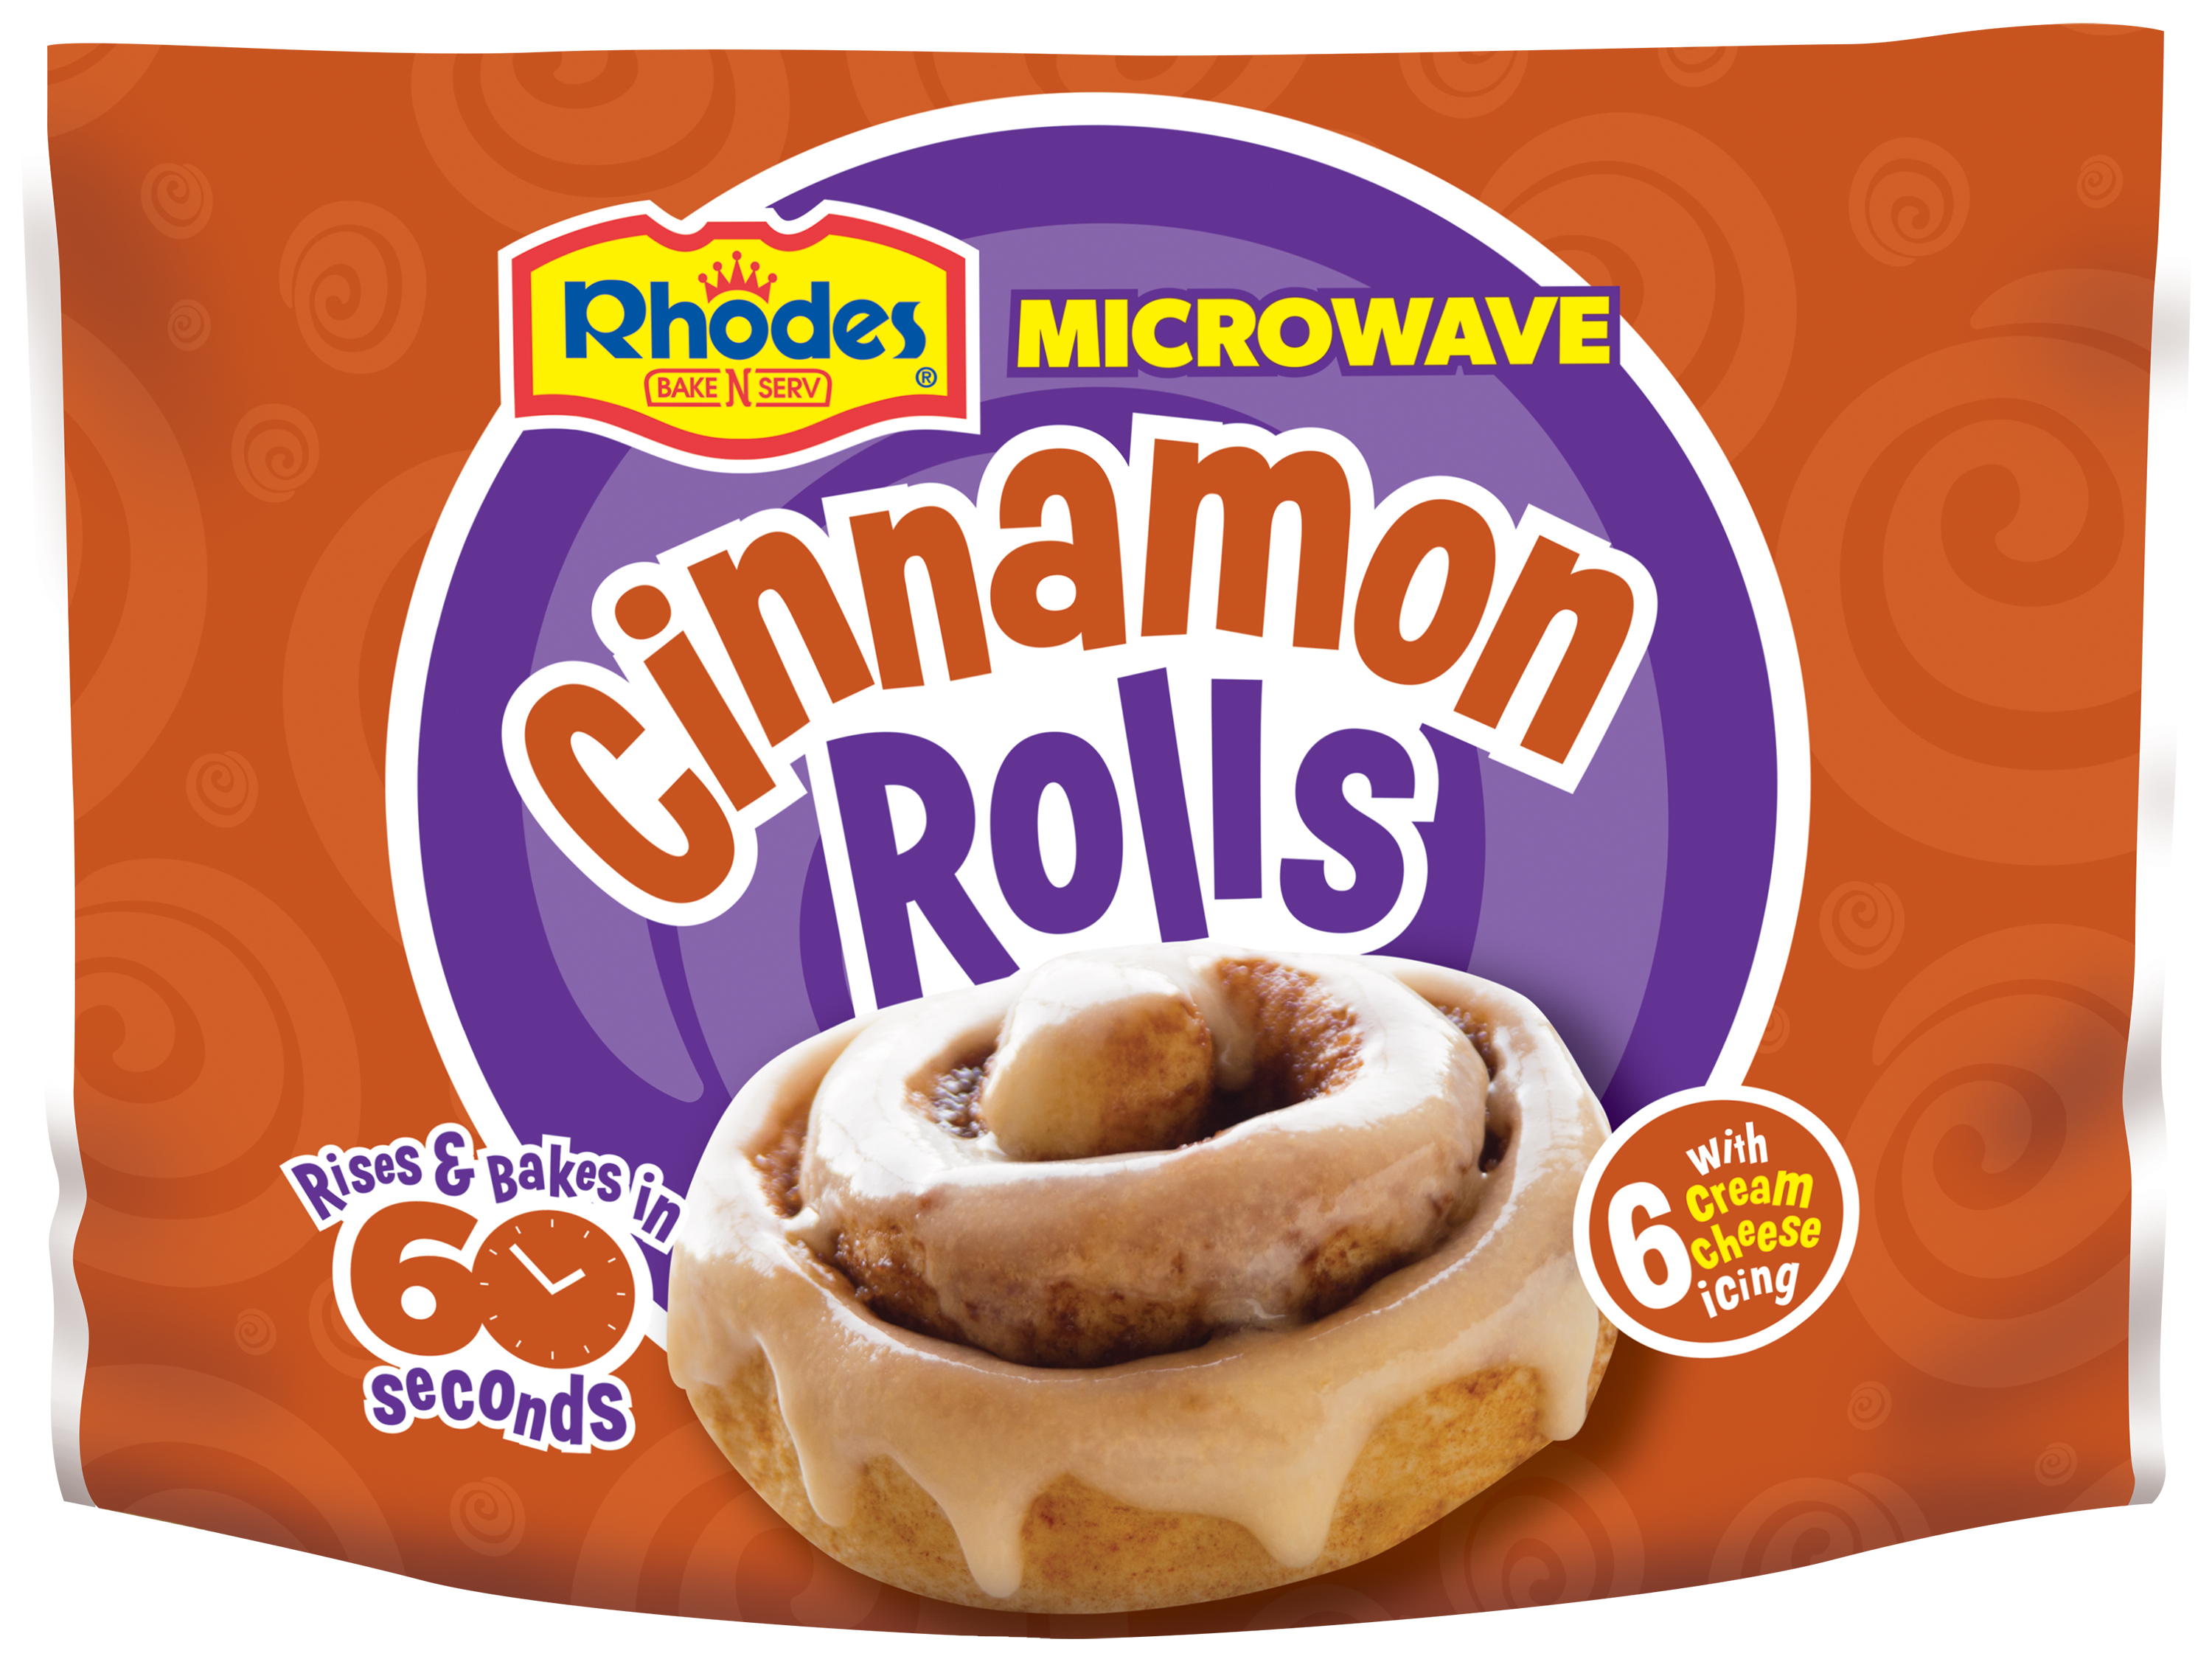 Rhodes microwaveable cinnamon buns